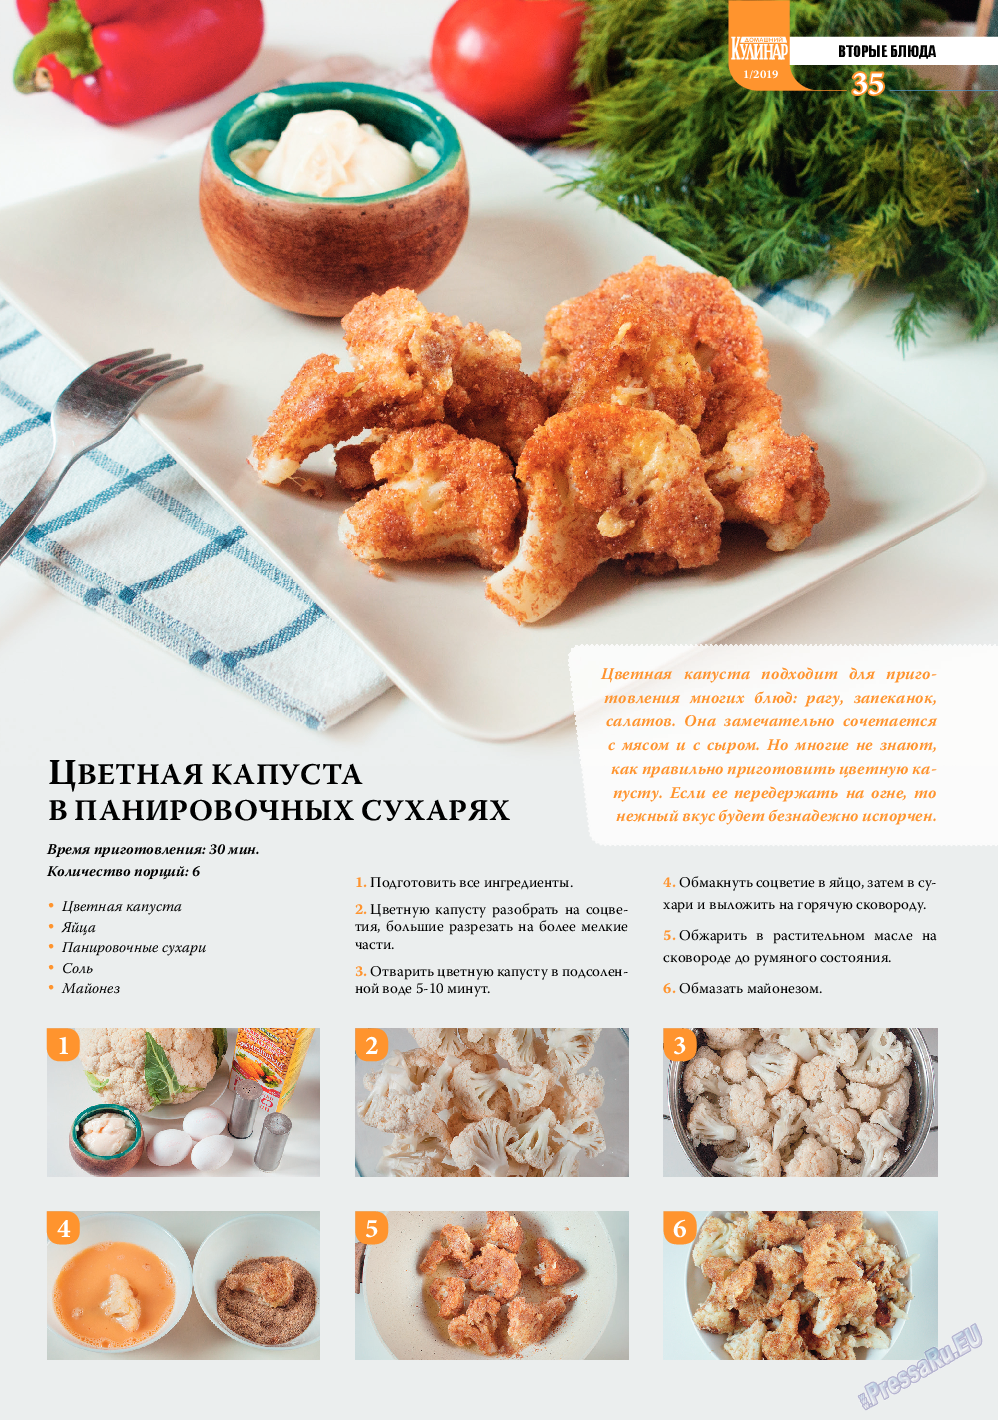 Домашний кулинар, журнал. 2019 №1 стр.35